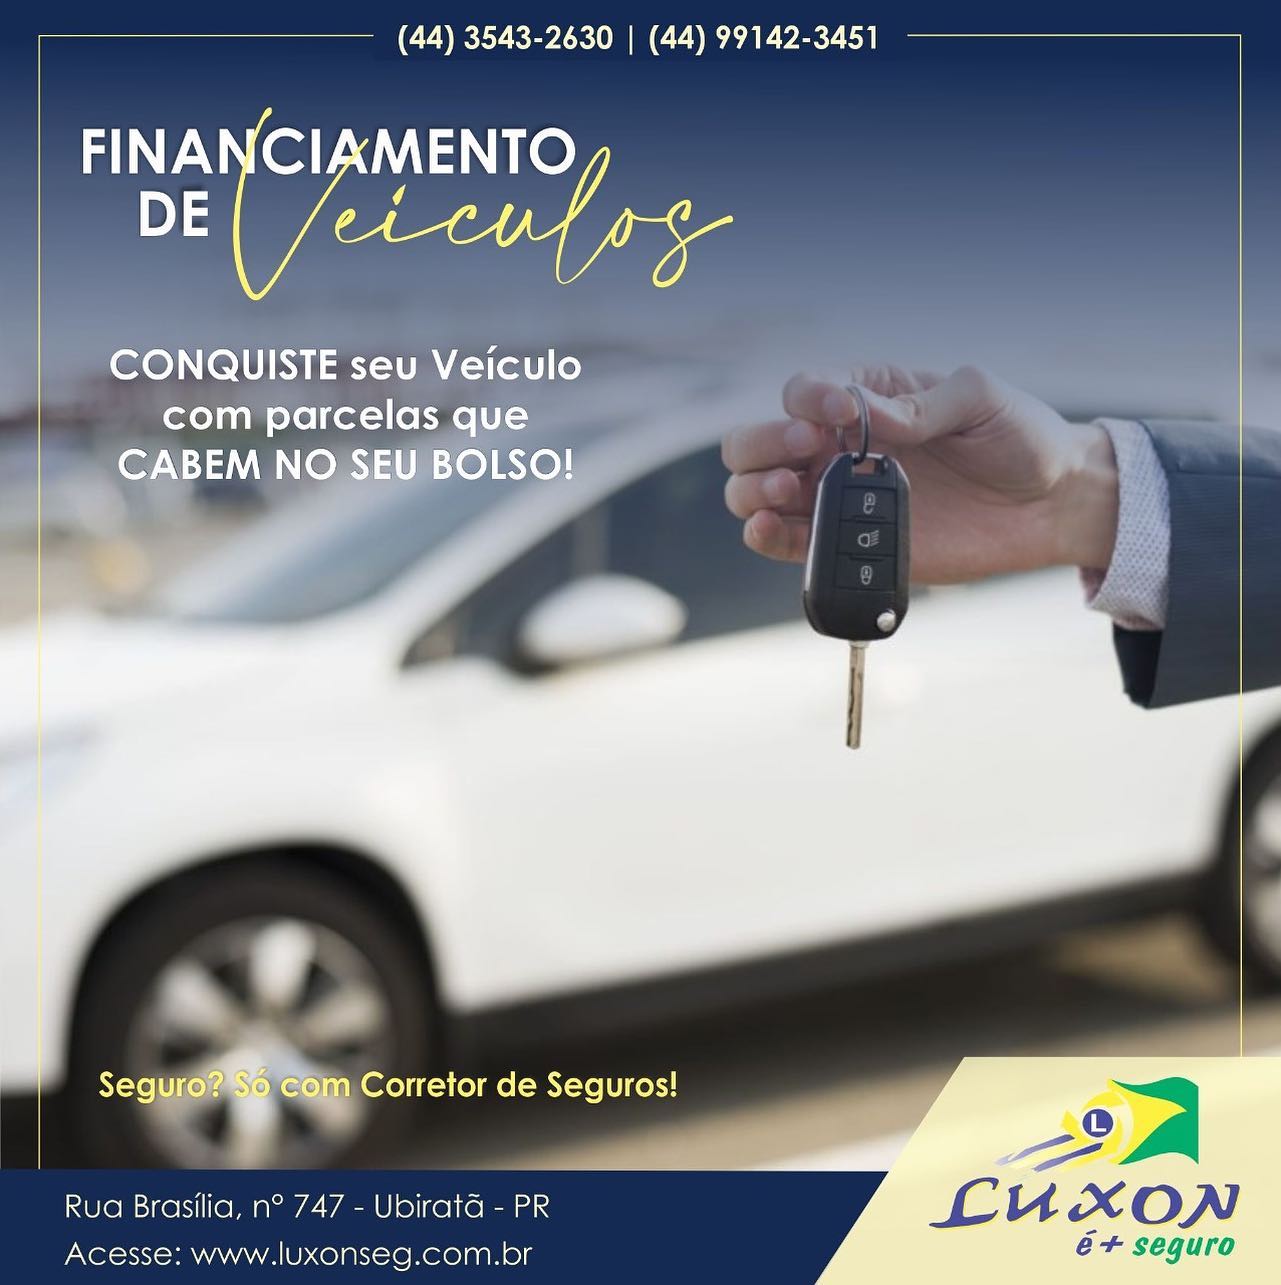 Financie seu veículo na Luxon é + Seguro